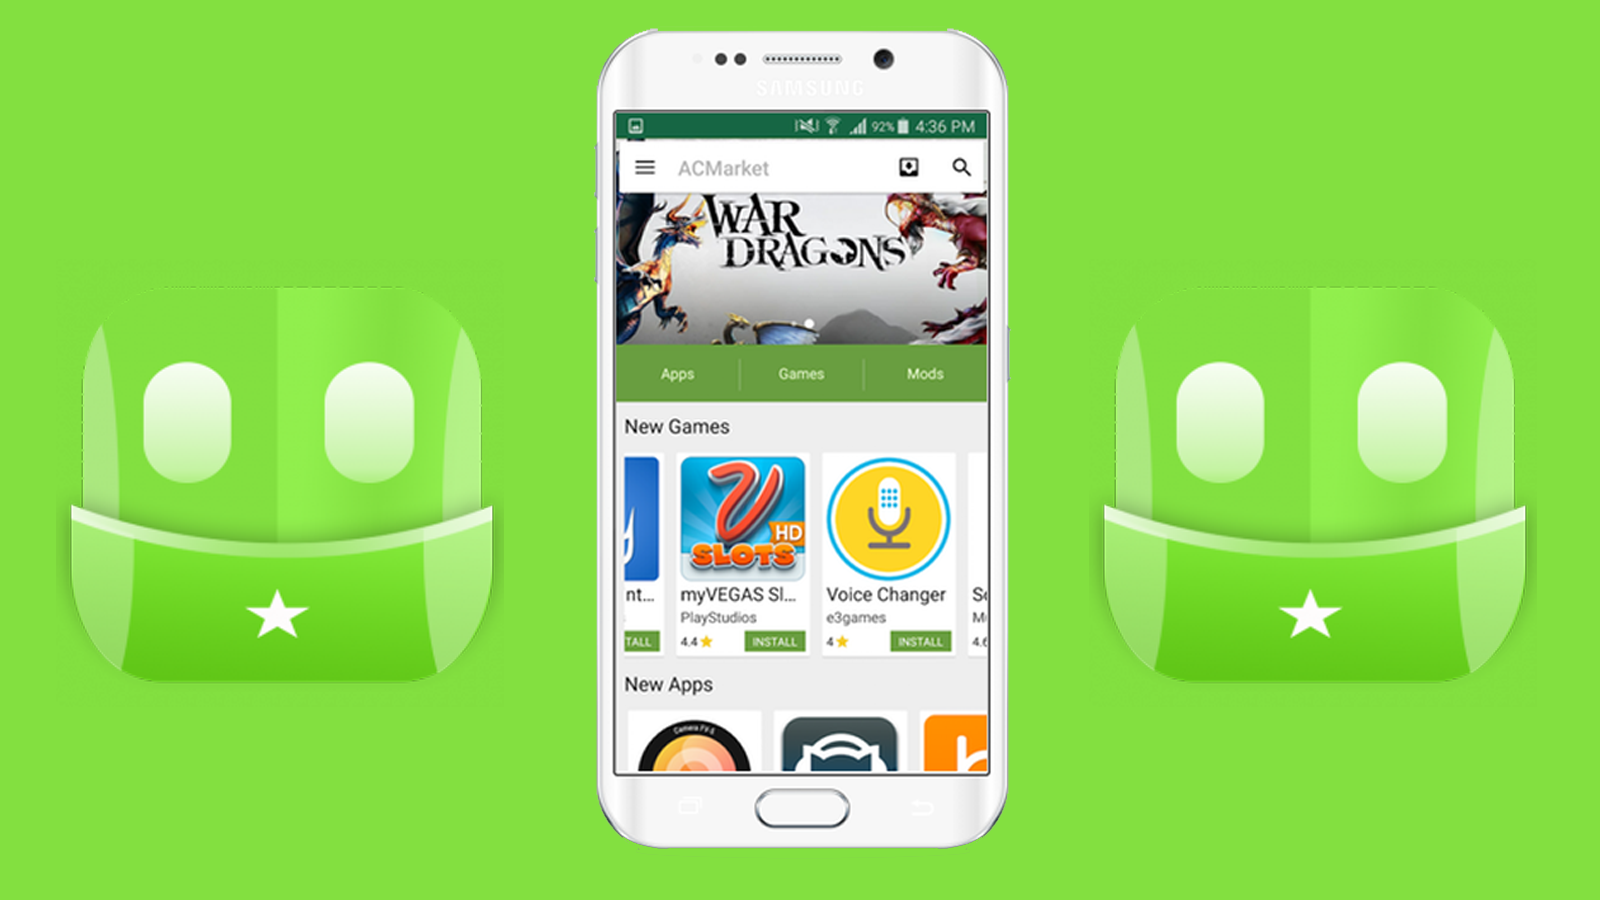 AcMarket - Baixe aplicativos e jogos pagos da PlayStore de Graça